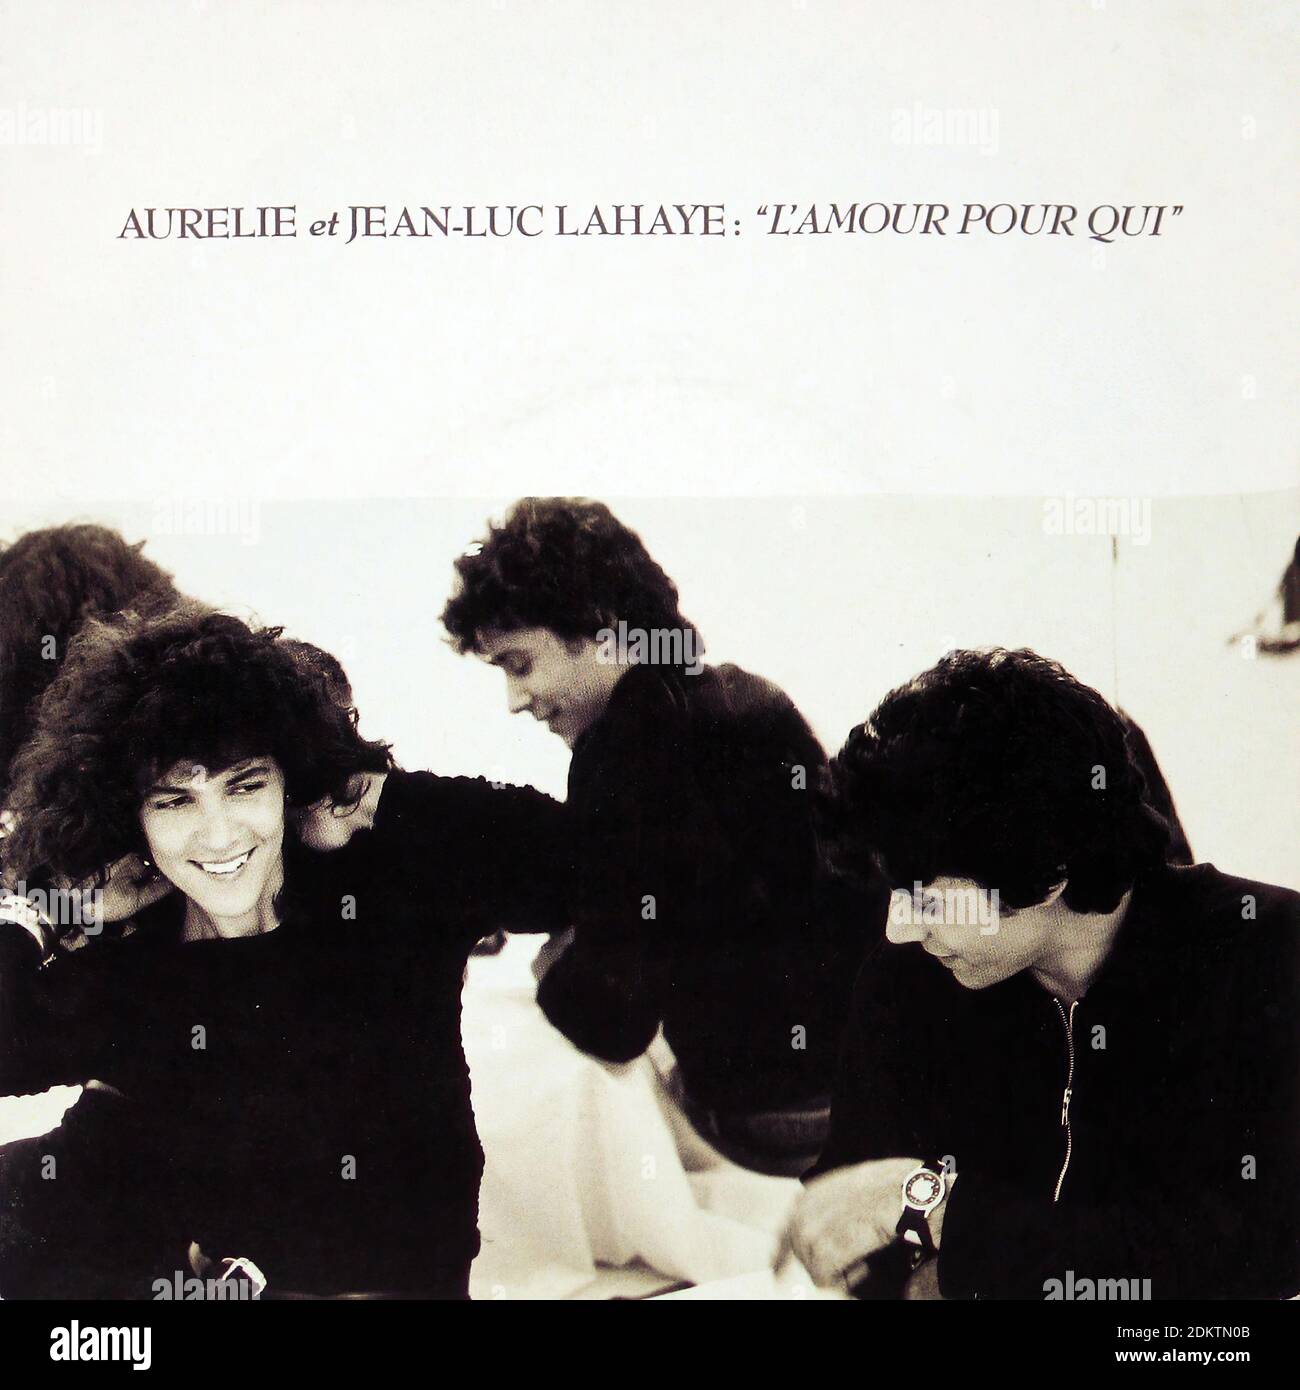 AURELIE ET JEAN LUC LAHAYE L'AMOUR POUR QUI - Vintage Vinyl Record Cover  Stock Photo - Alamy